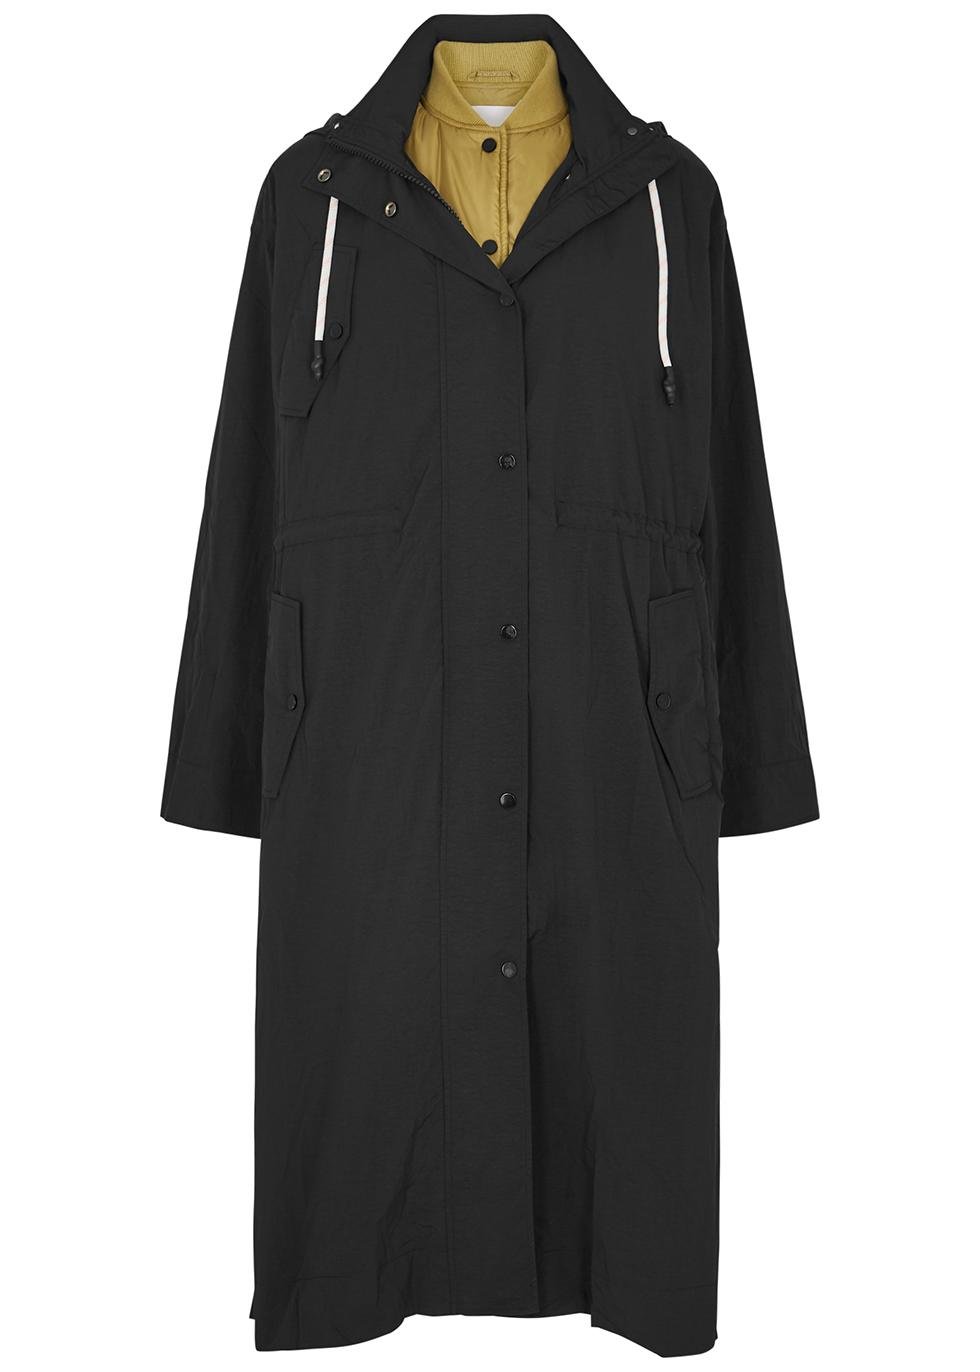 Carlton black layered shell coat by DAY BIRGER ET MIKKELSEN